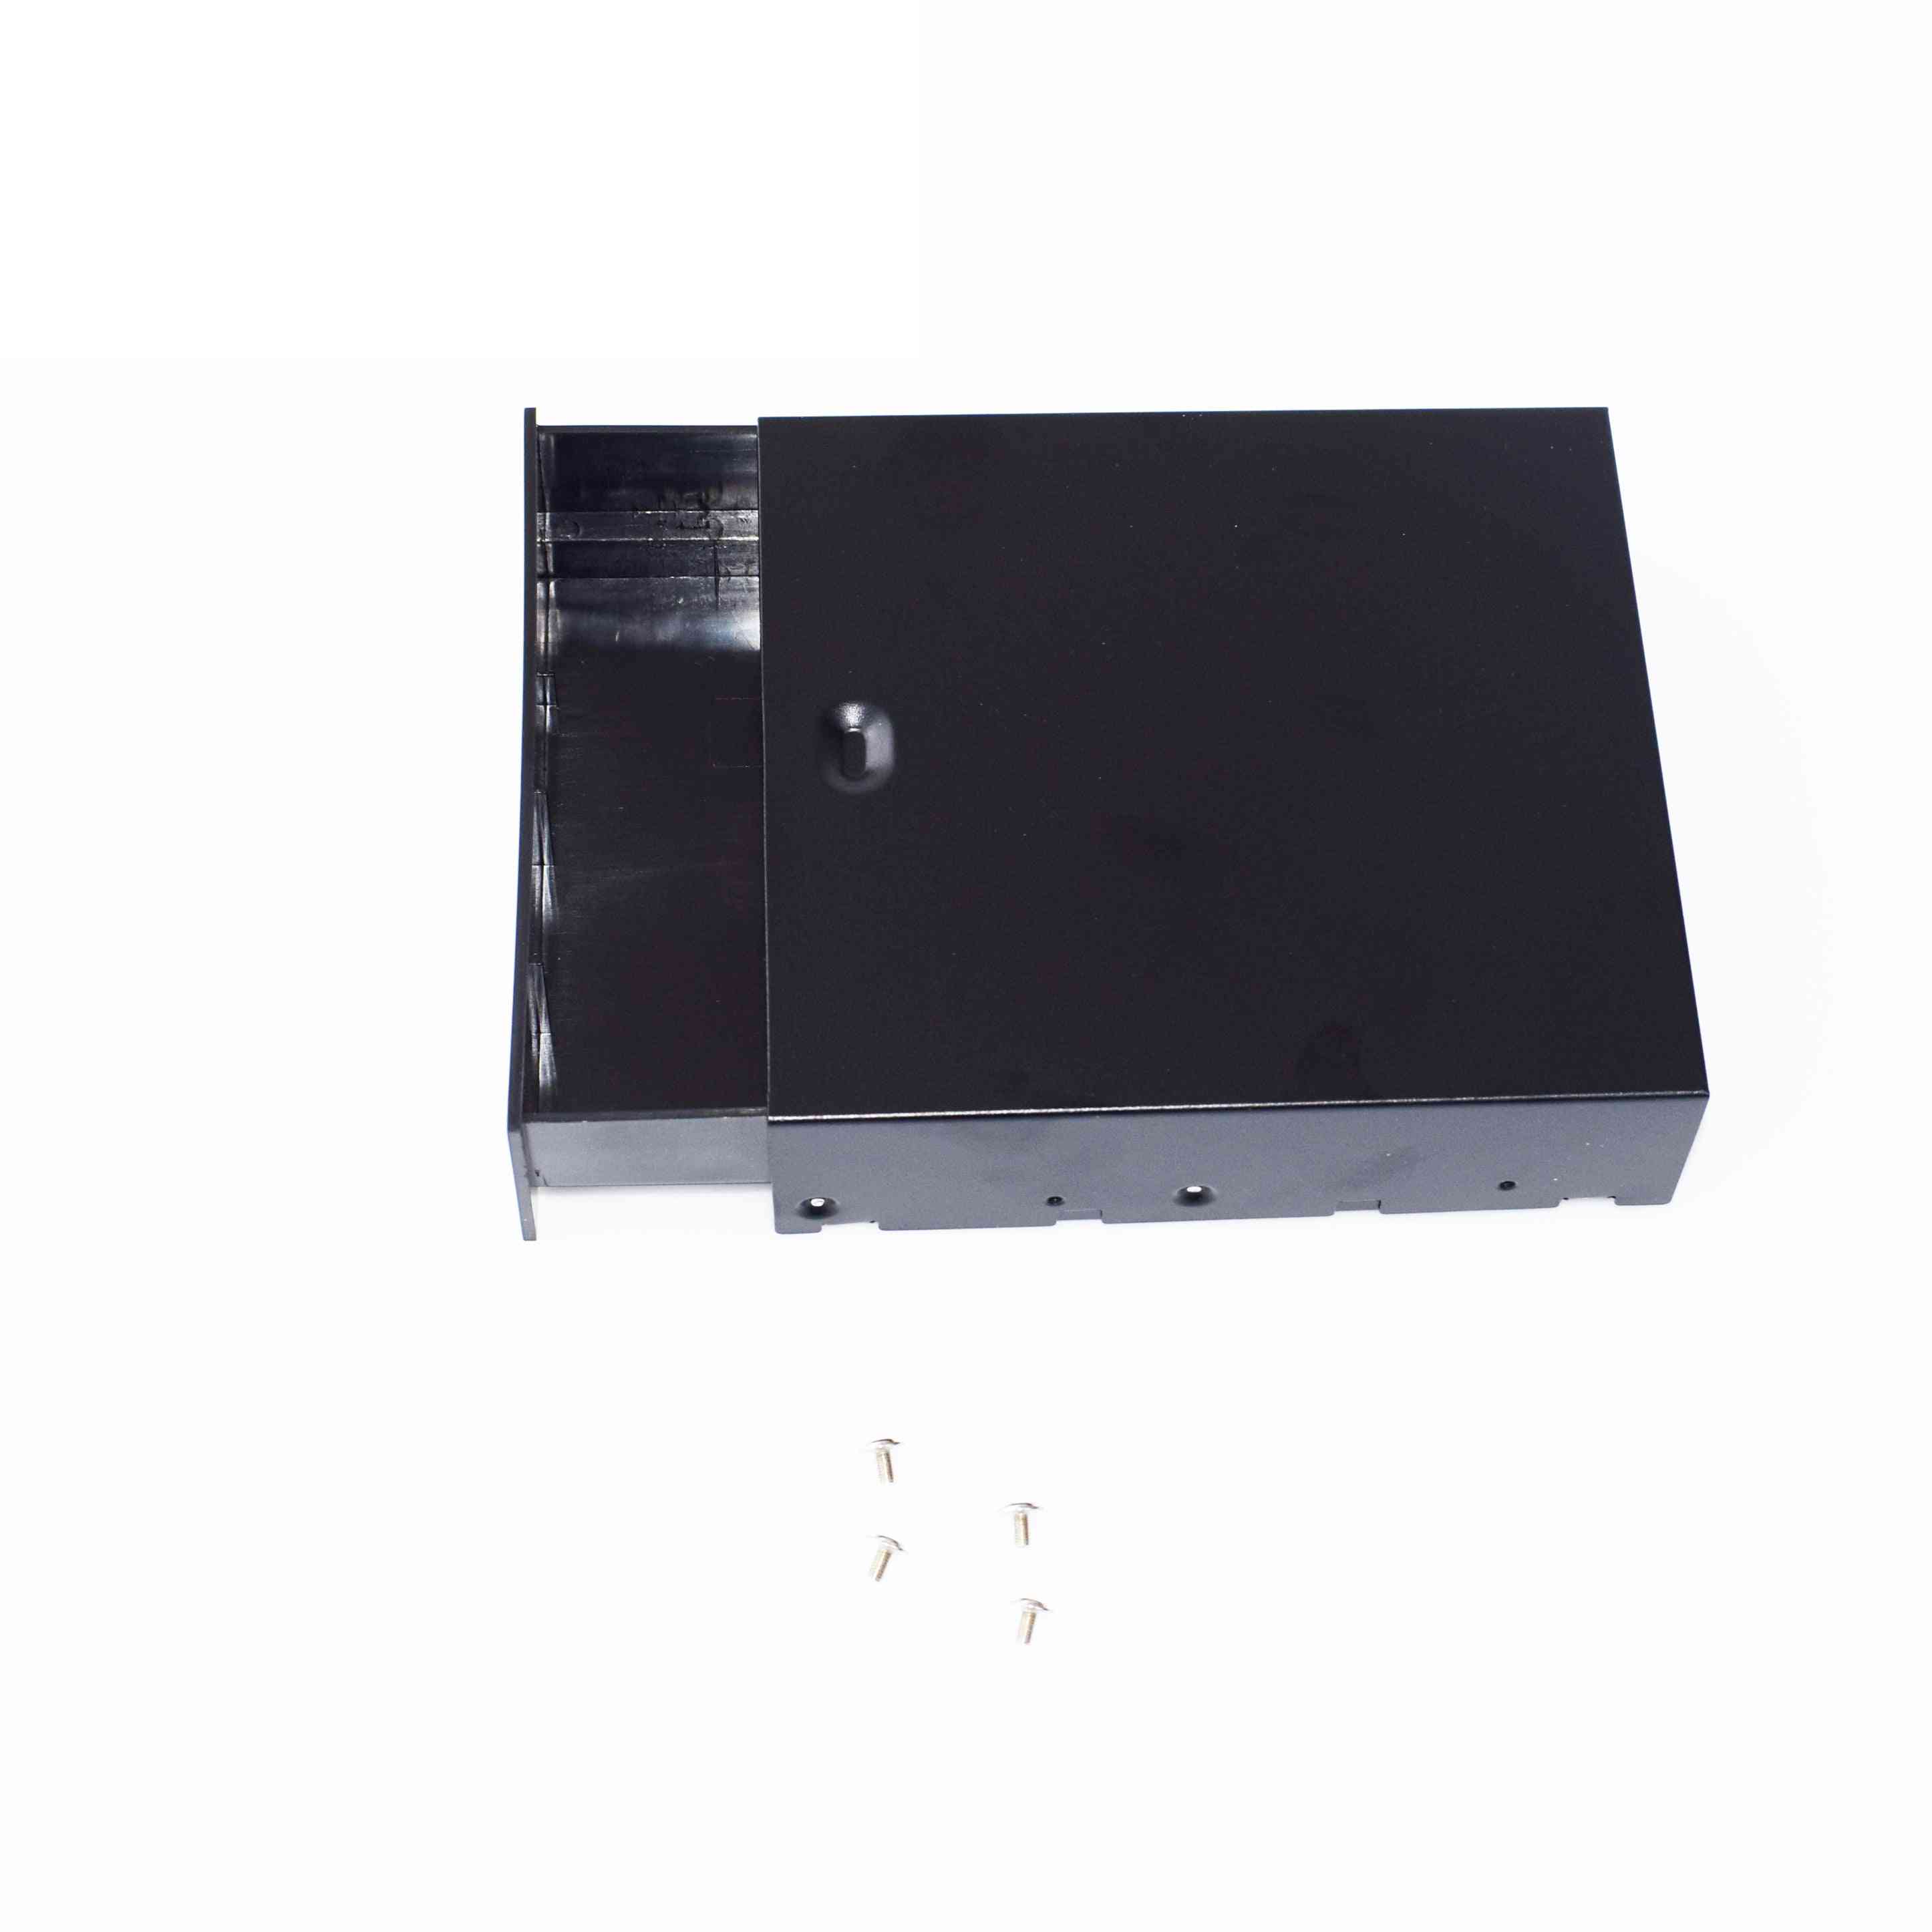 Czarny komputer stacjonarny dysk twardy atx / matx mobile-blank-rack szuflada z tacą do przechowywania / pudełko (5,25 